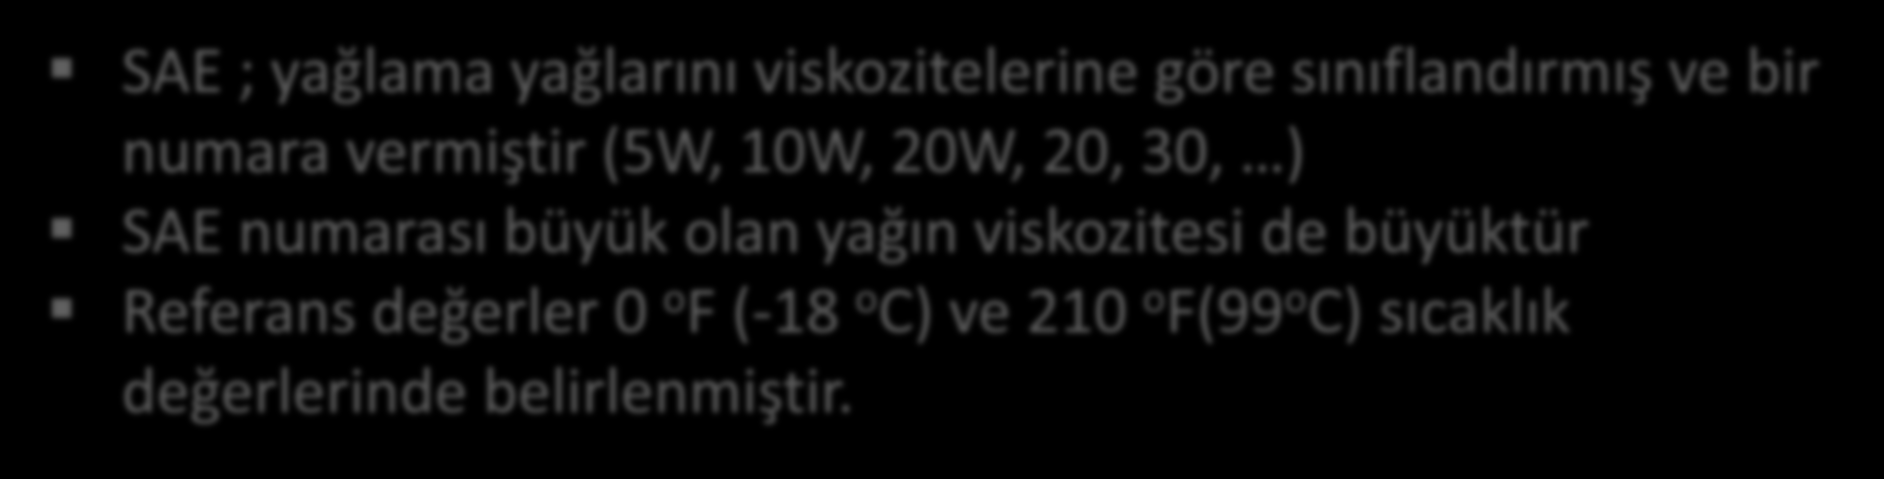 Viskozite-Sıcaklık Değişimi SAE ; yağlama yağlarını viskozitelerine göre sınıflandırmış ve bir numara vermiştir (5W, 10W, 20W, 20, 30, ) SAE